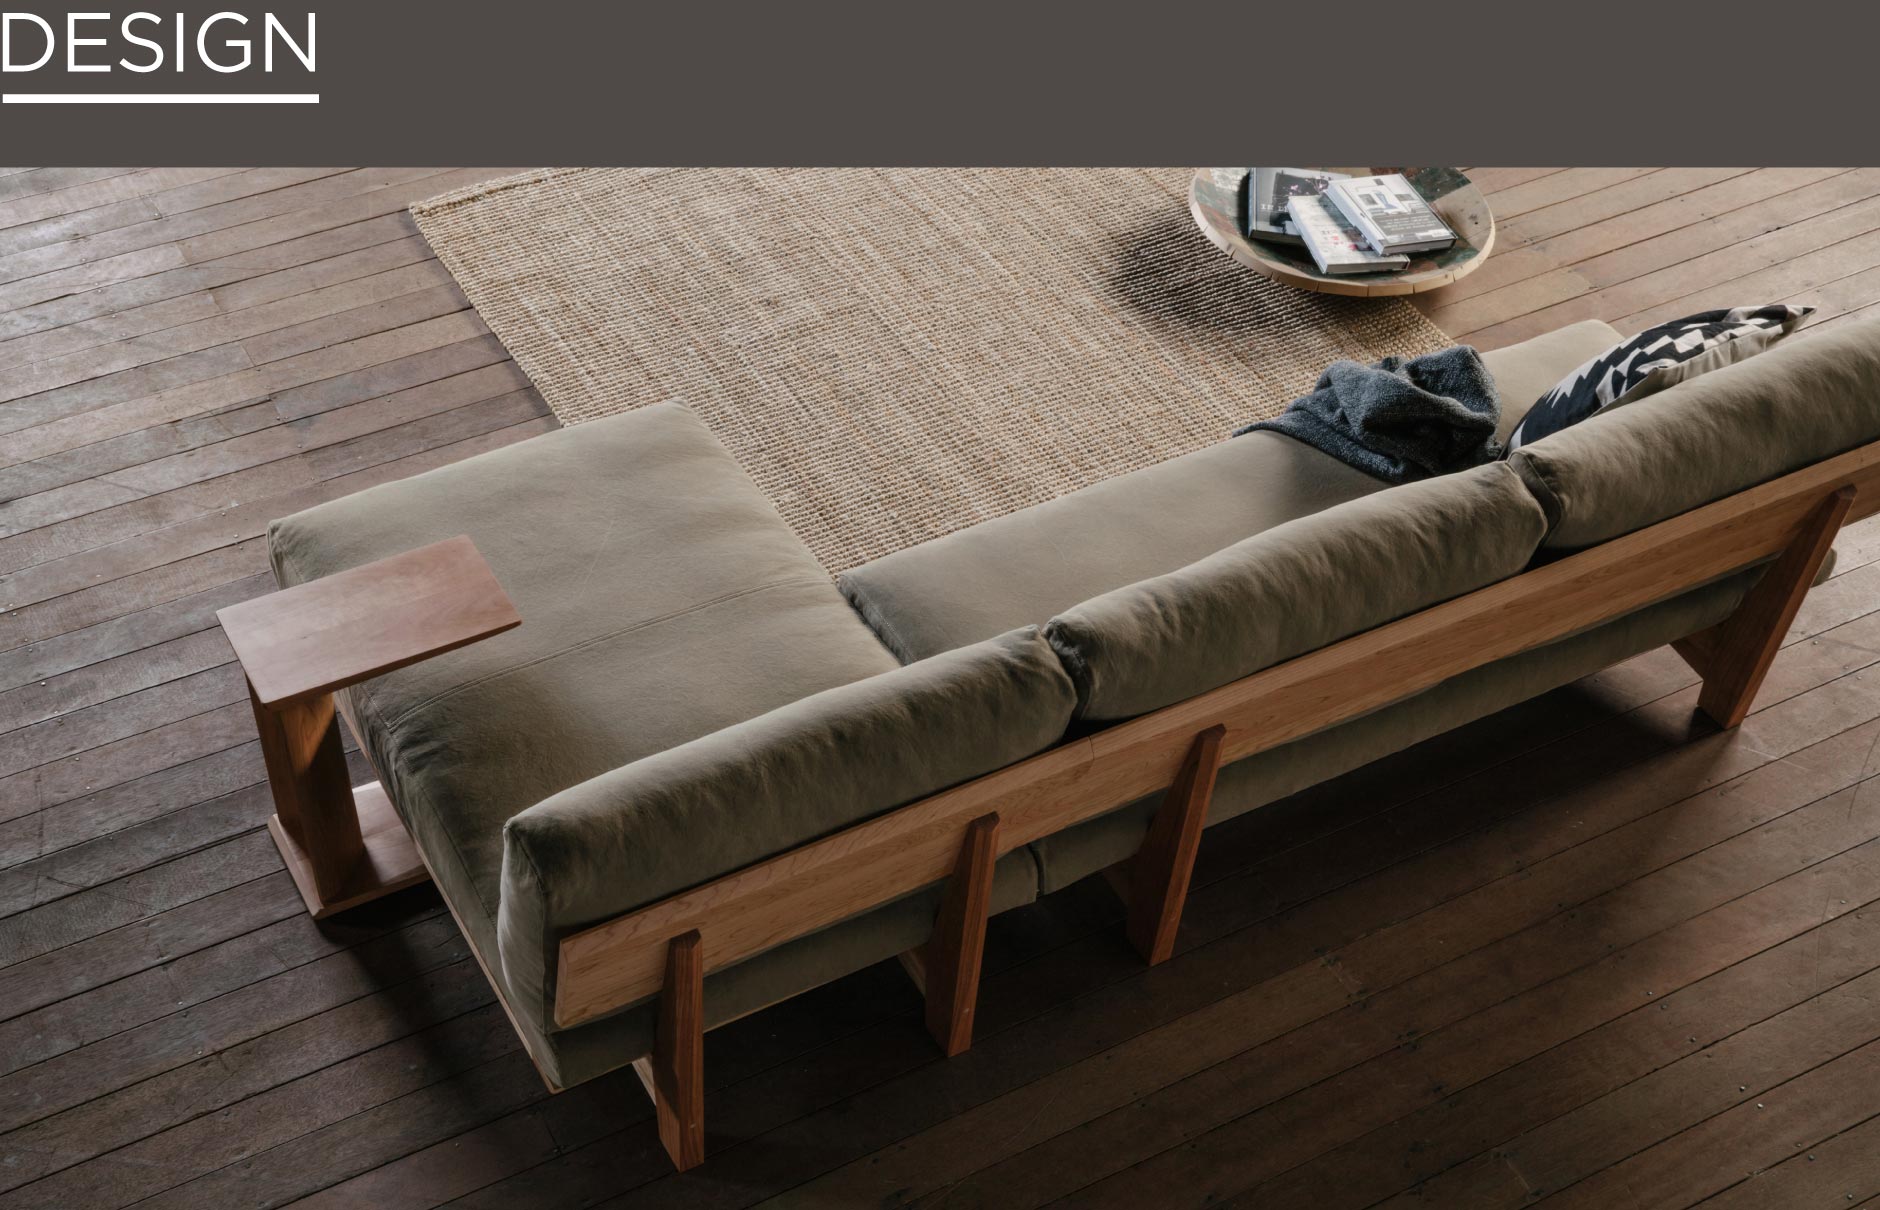 足を伸ばしてゆったり寛げるカウチソファ。組み合わせでL字型にもできるSOLID福岡の家具の中でも圧倒的人気の万能型ソファ。